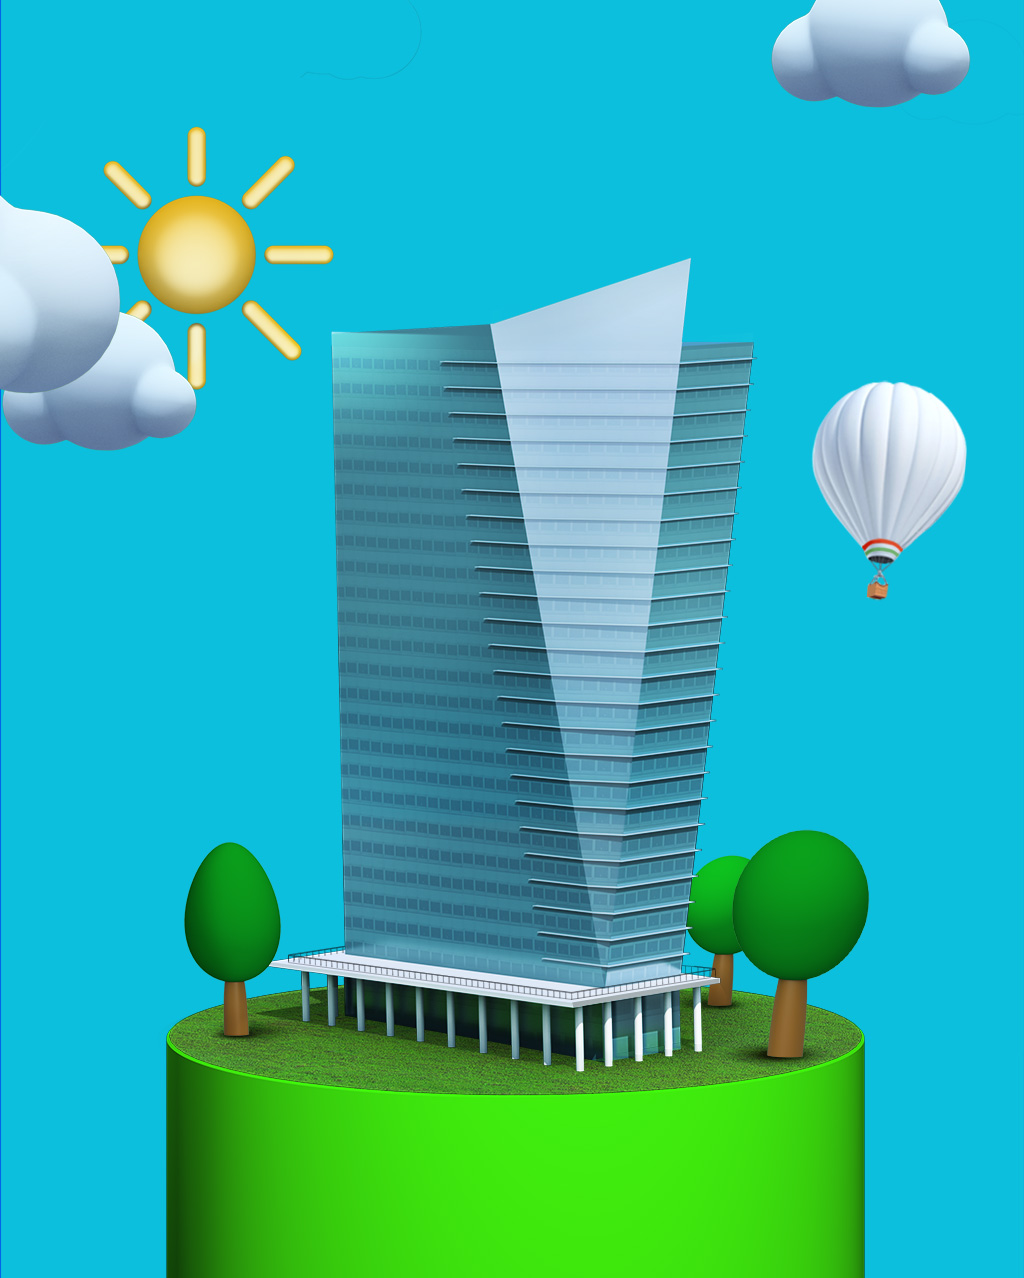 Disegno 3D che rappresenta un grattacielo inserito in un ambiente sostenibile